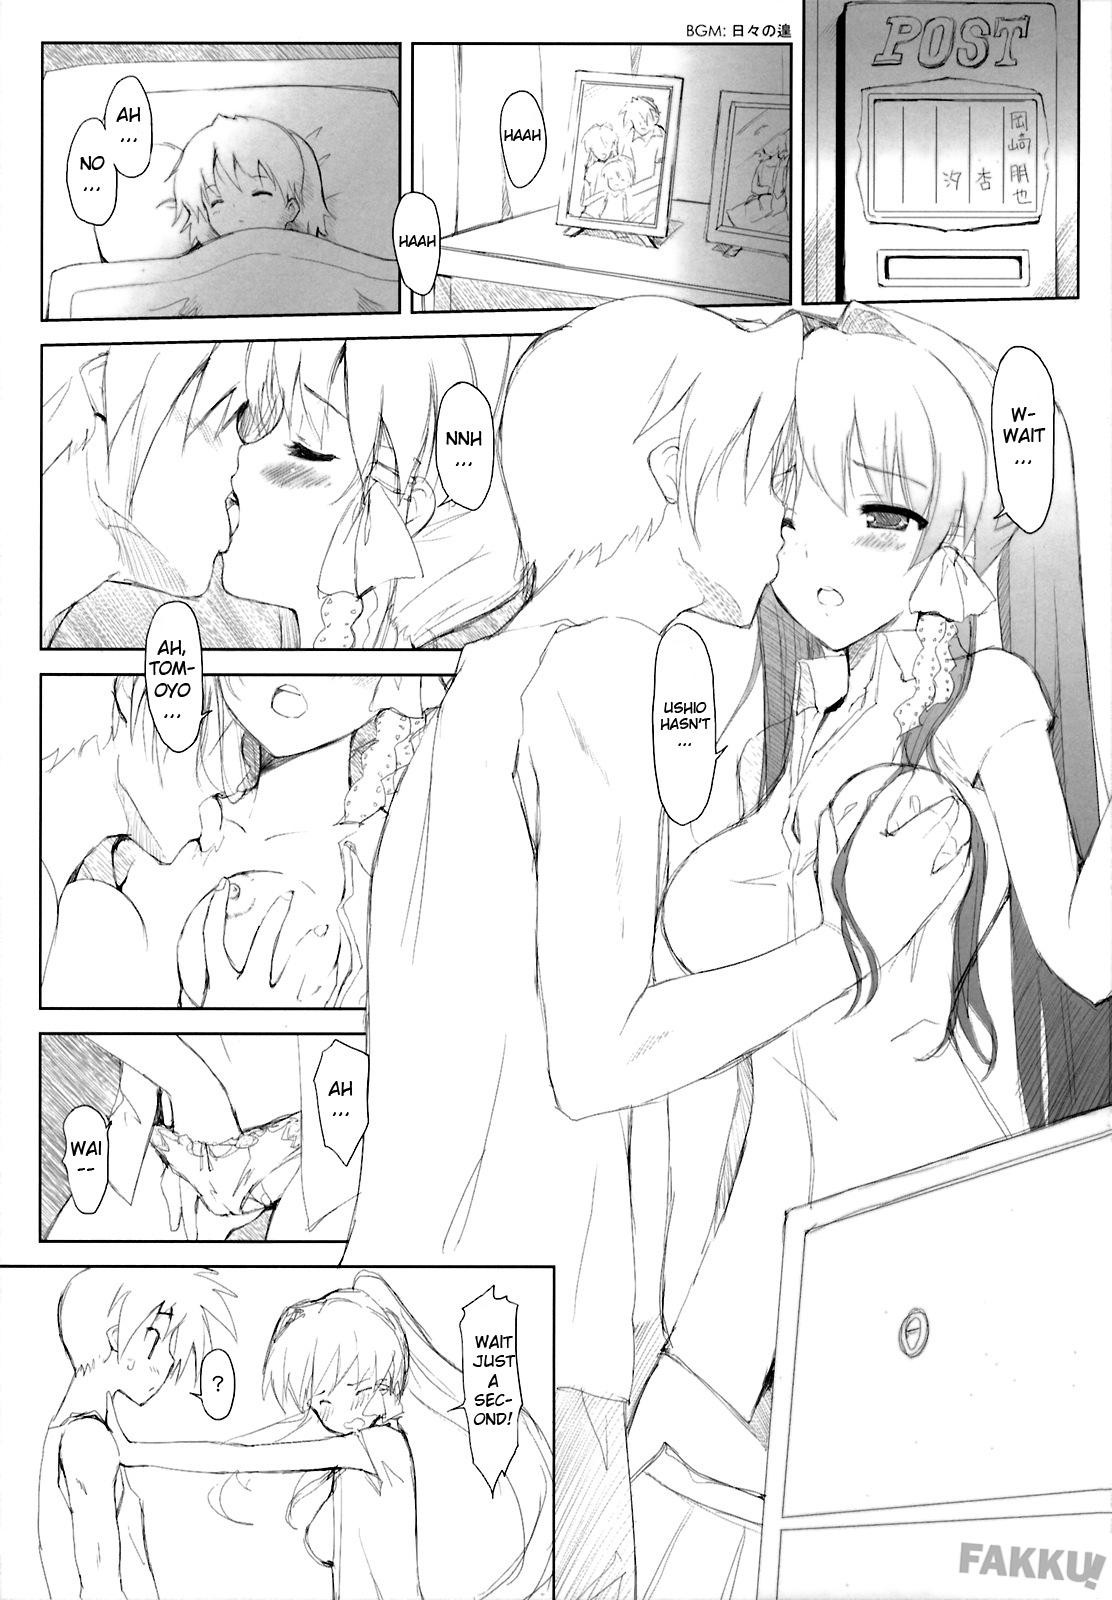 Orgasms KYOU MANIA 2 - Clannad Semen - Page 4